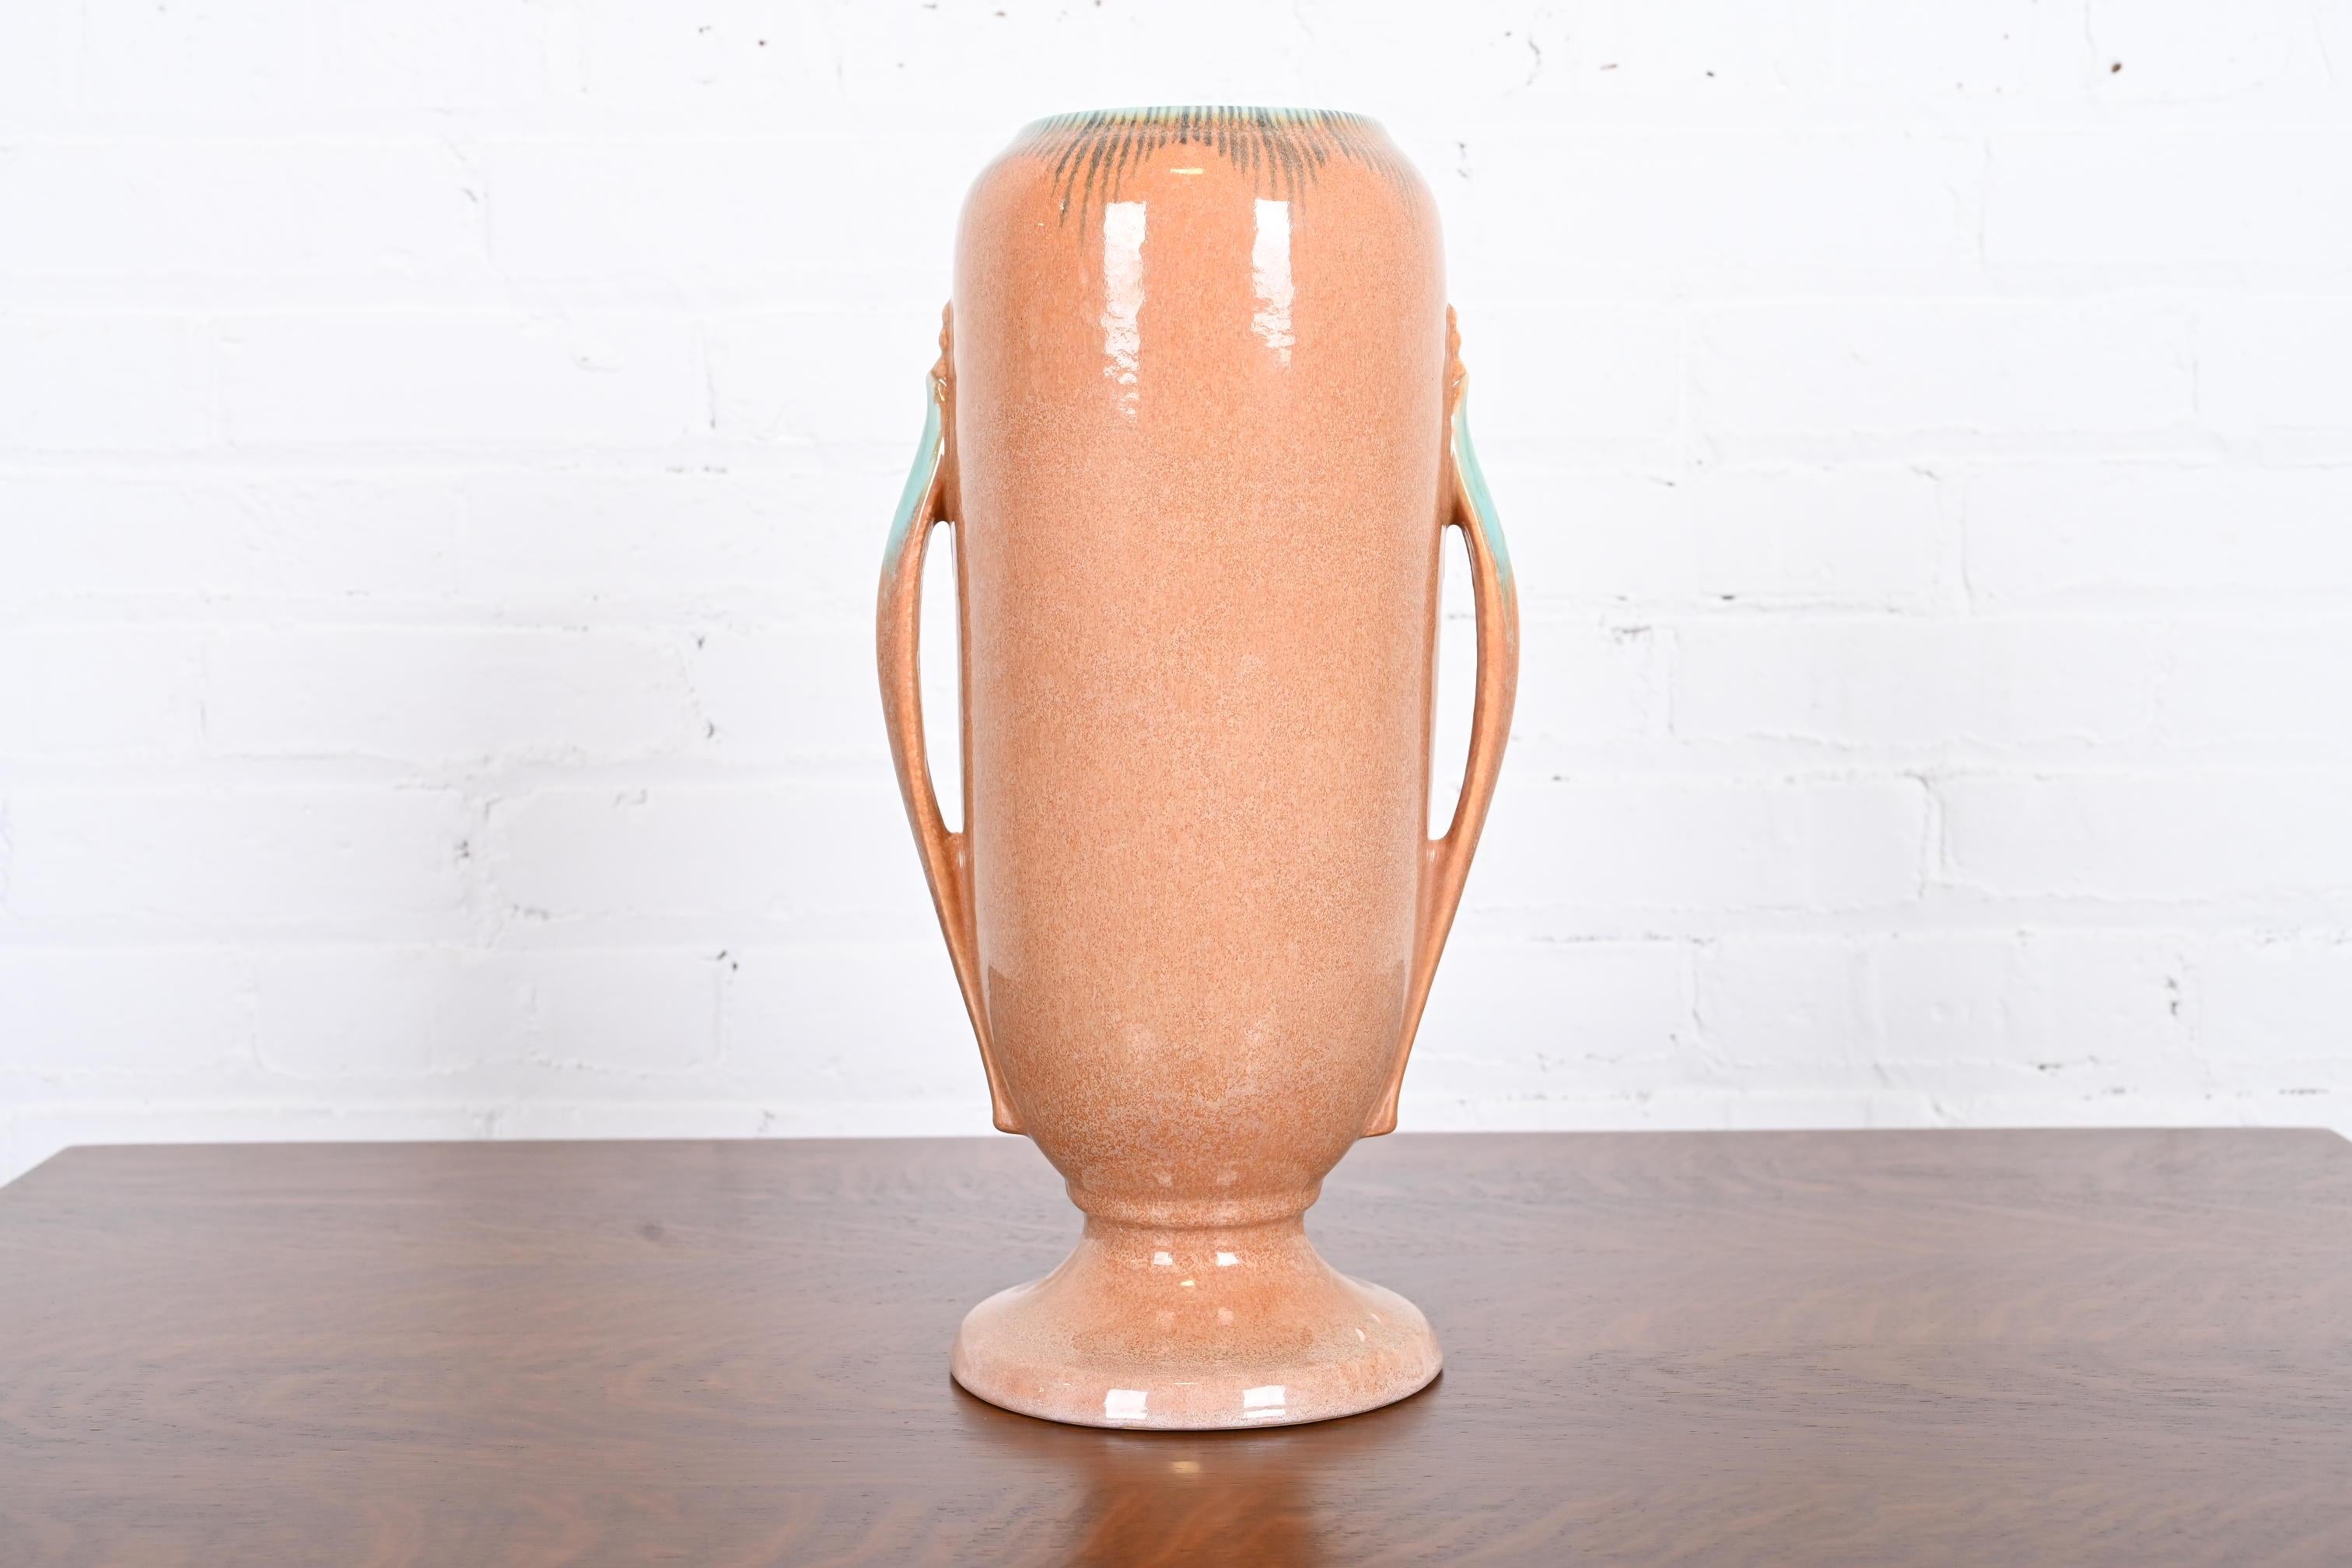 Magnifique vase Art déco en poterie d'art à anses émaillées

Par Roseville Pottery

États-Unis, années 1930

Céramique émaillée d'une belle couleur pêche et turquoise.

Dimensions : 7,5 